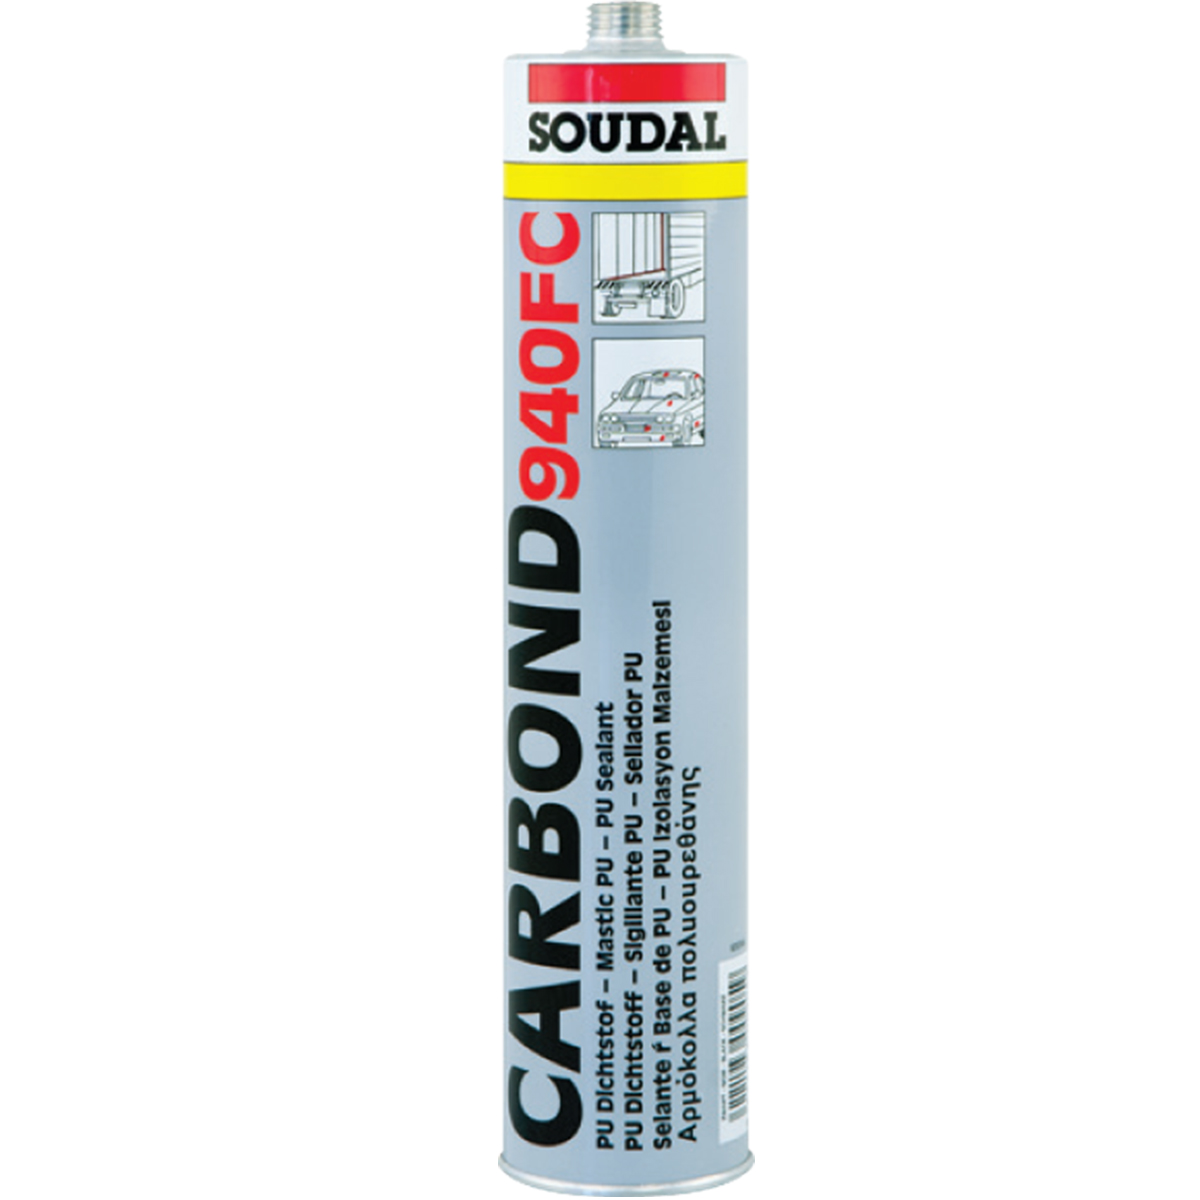 Soudal carbond 940 FC клей-герметик быстроотверждающийся